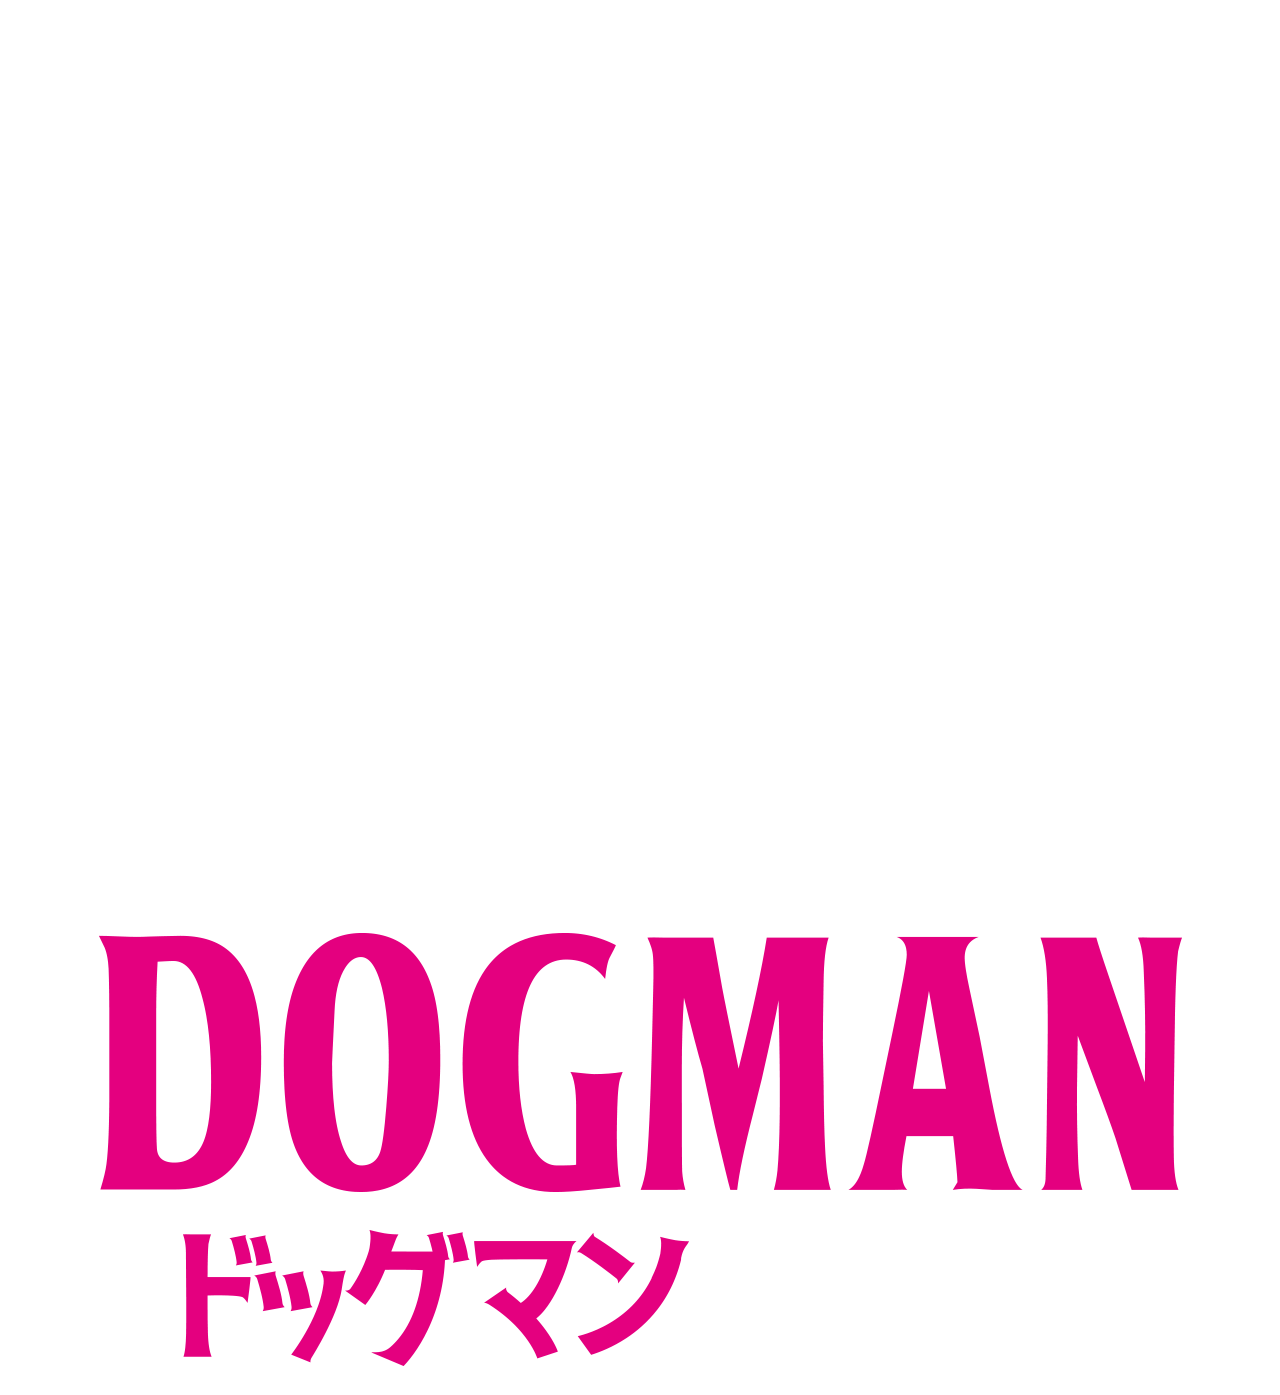 映画『DOGMAN ドッグマン』